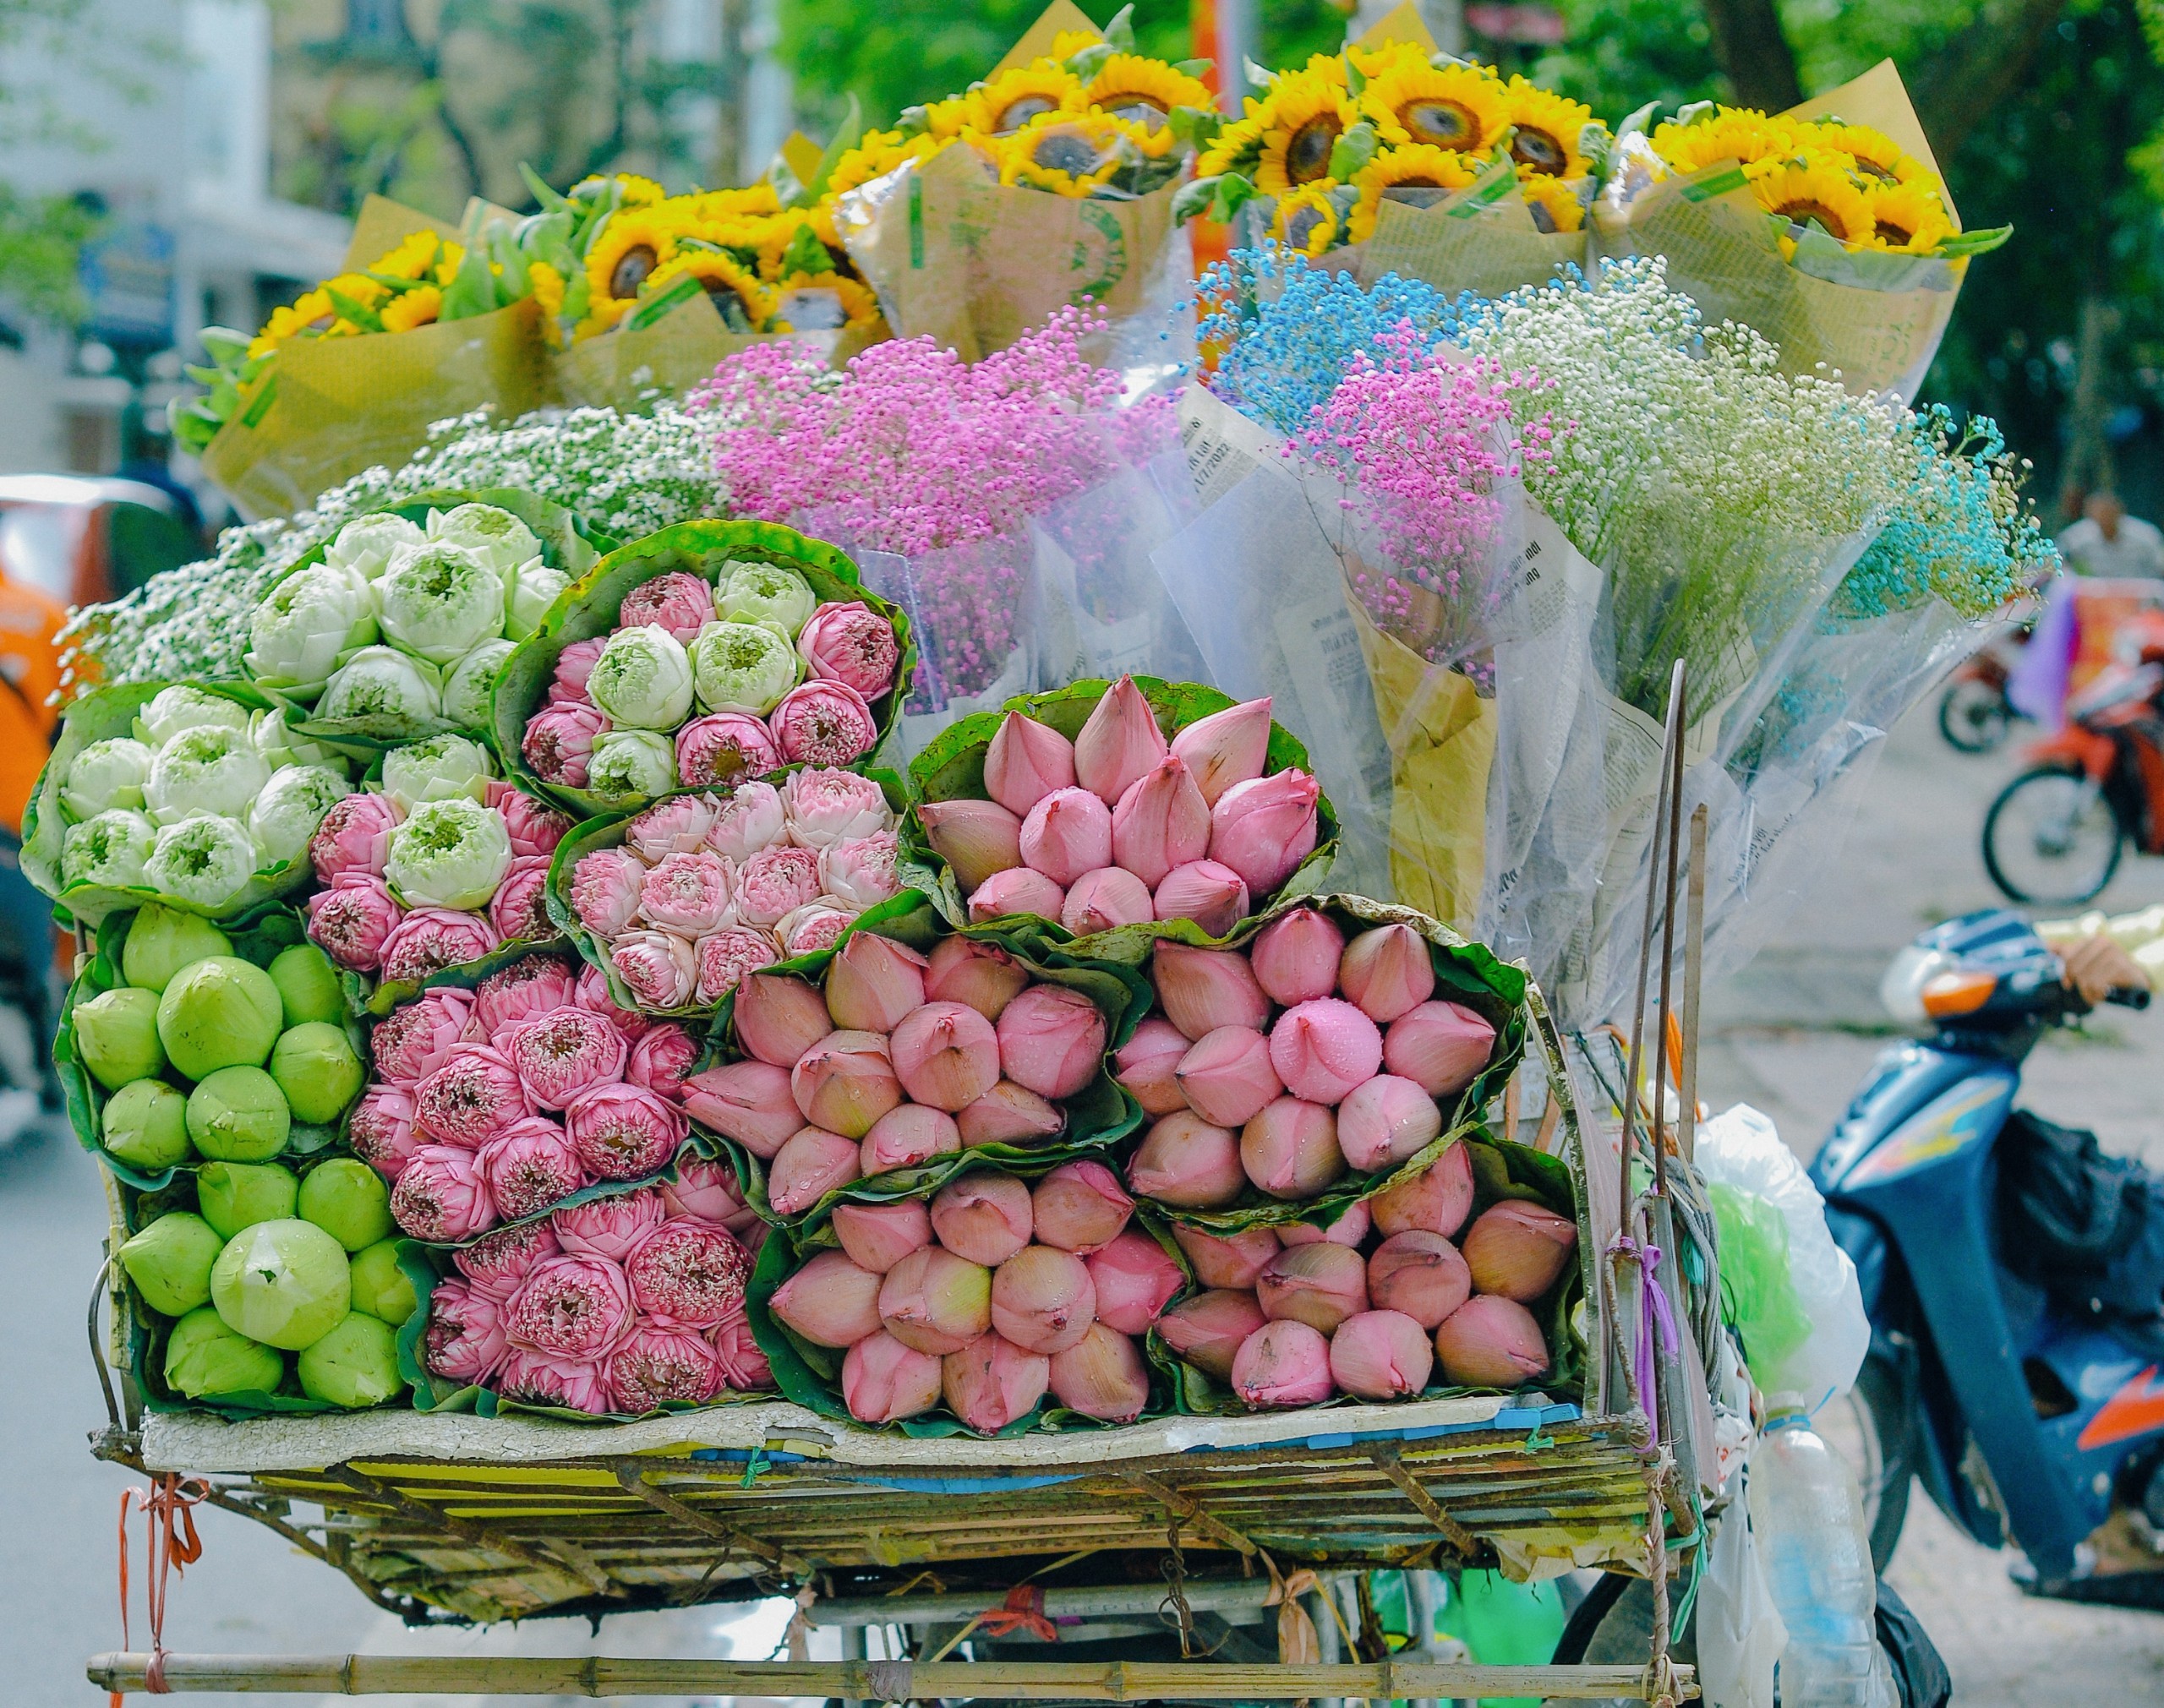 Xe hàng hoa Hà Nội là một trong những hình ảnh đẹp nhất của thủ đô, mang lại nhiều cảm xúc cho cả người dân và khách du lịch. Hình ảnh này sẽ giúp bạn cảm nhận được vẻ đẹp độc đáo của xe hàng hoa Hà Nội với những loại hoa đa dạng và thanh tao.